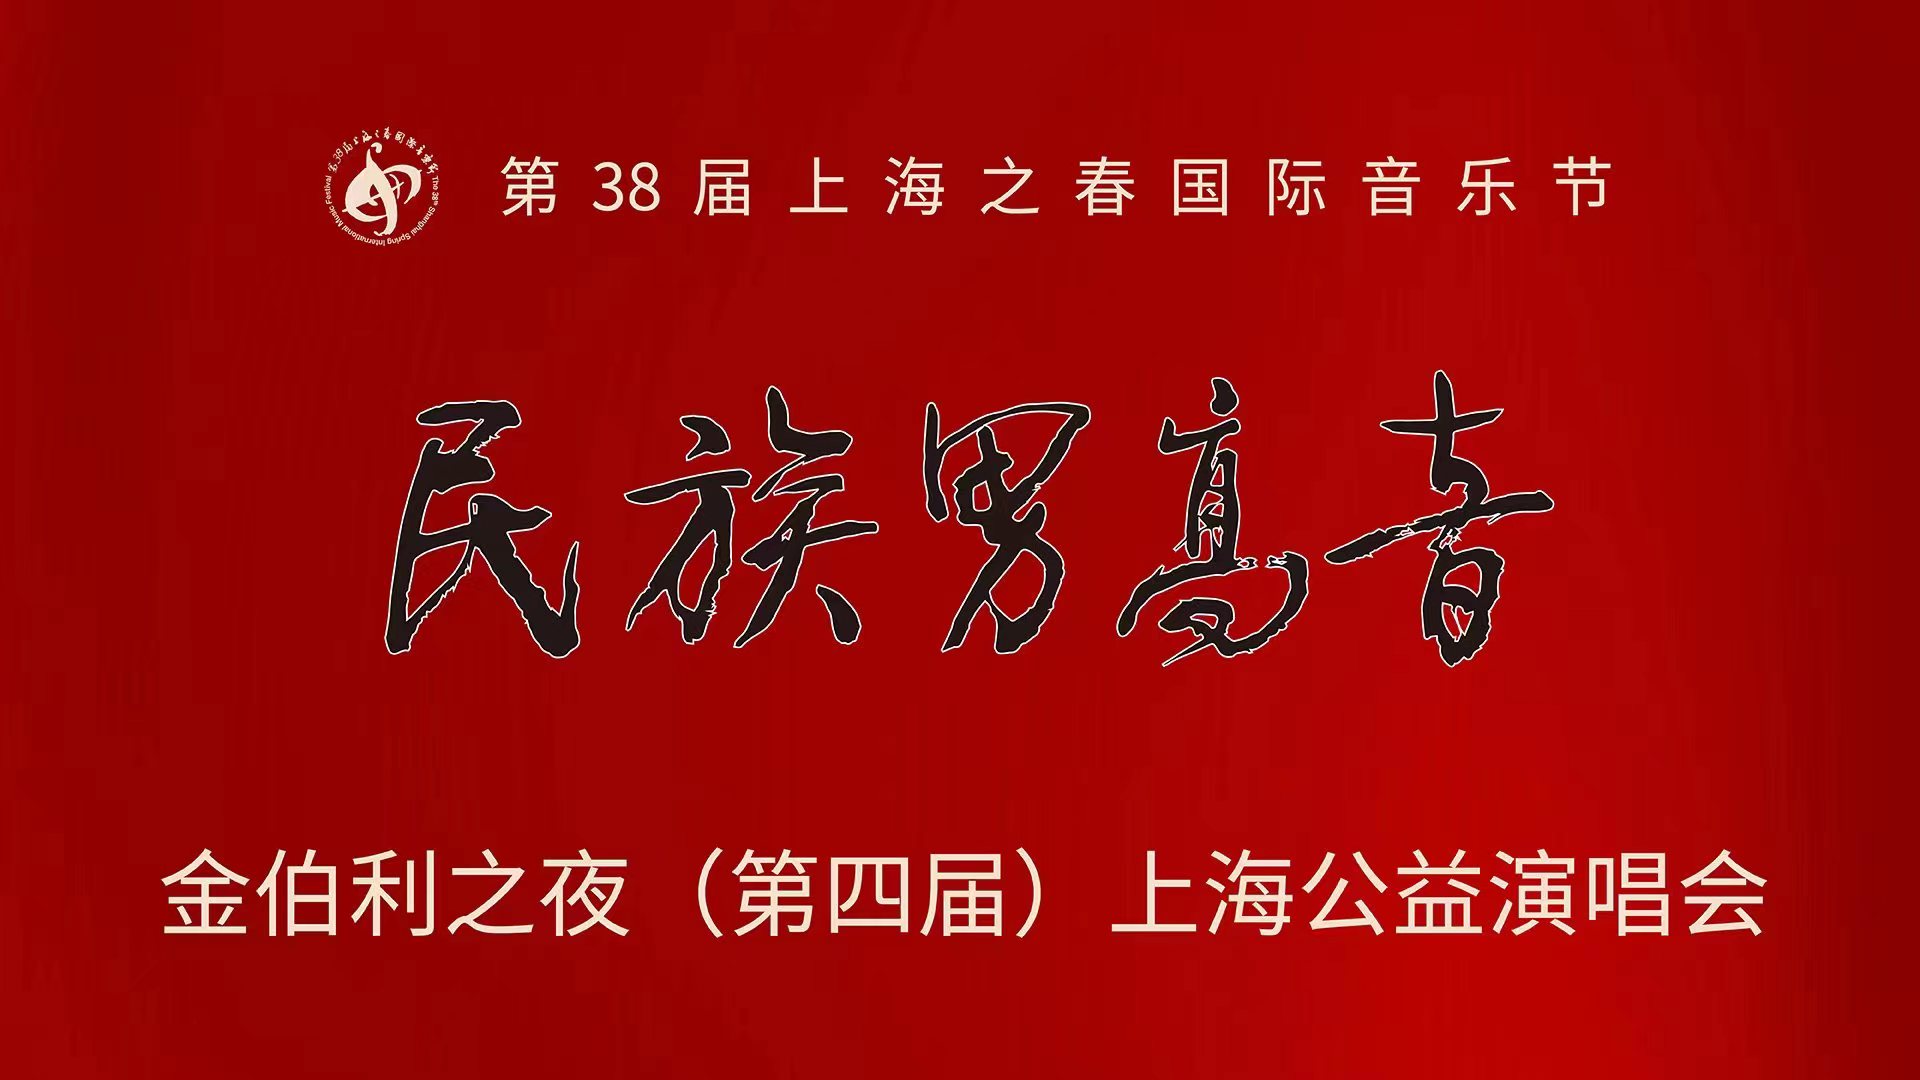 第四届民族男高音上海公益演唱会